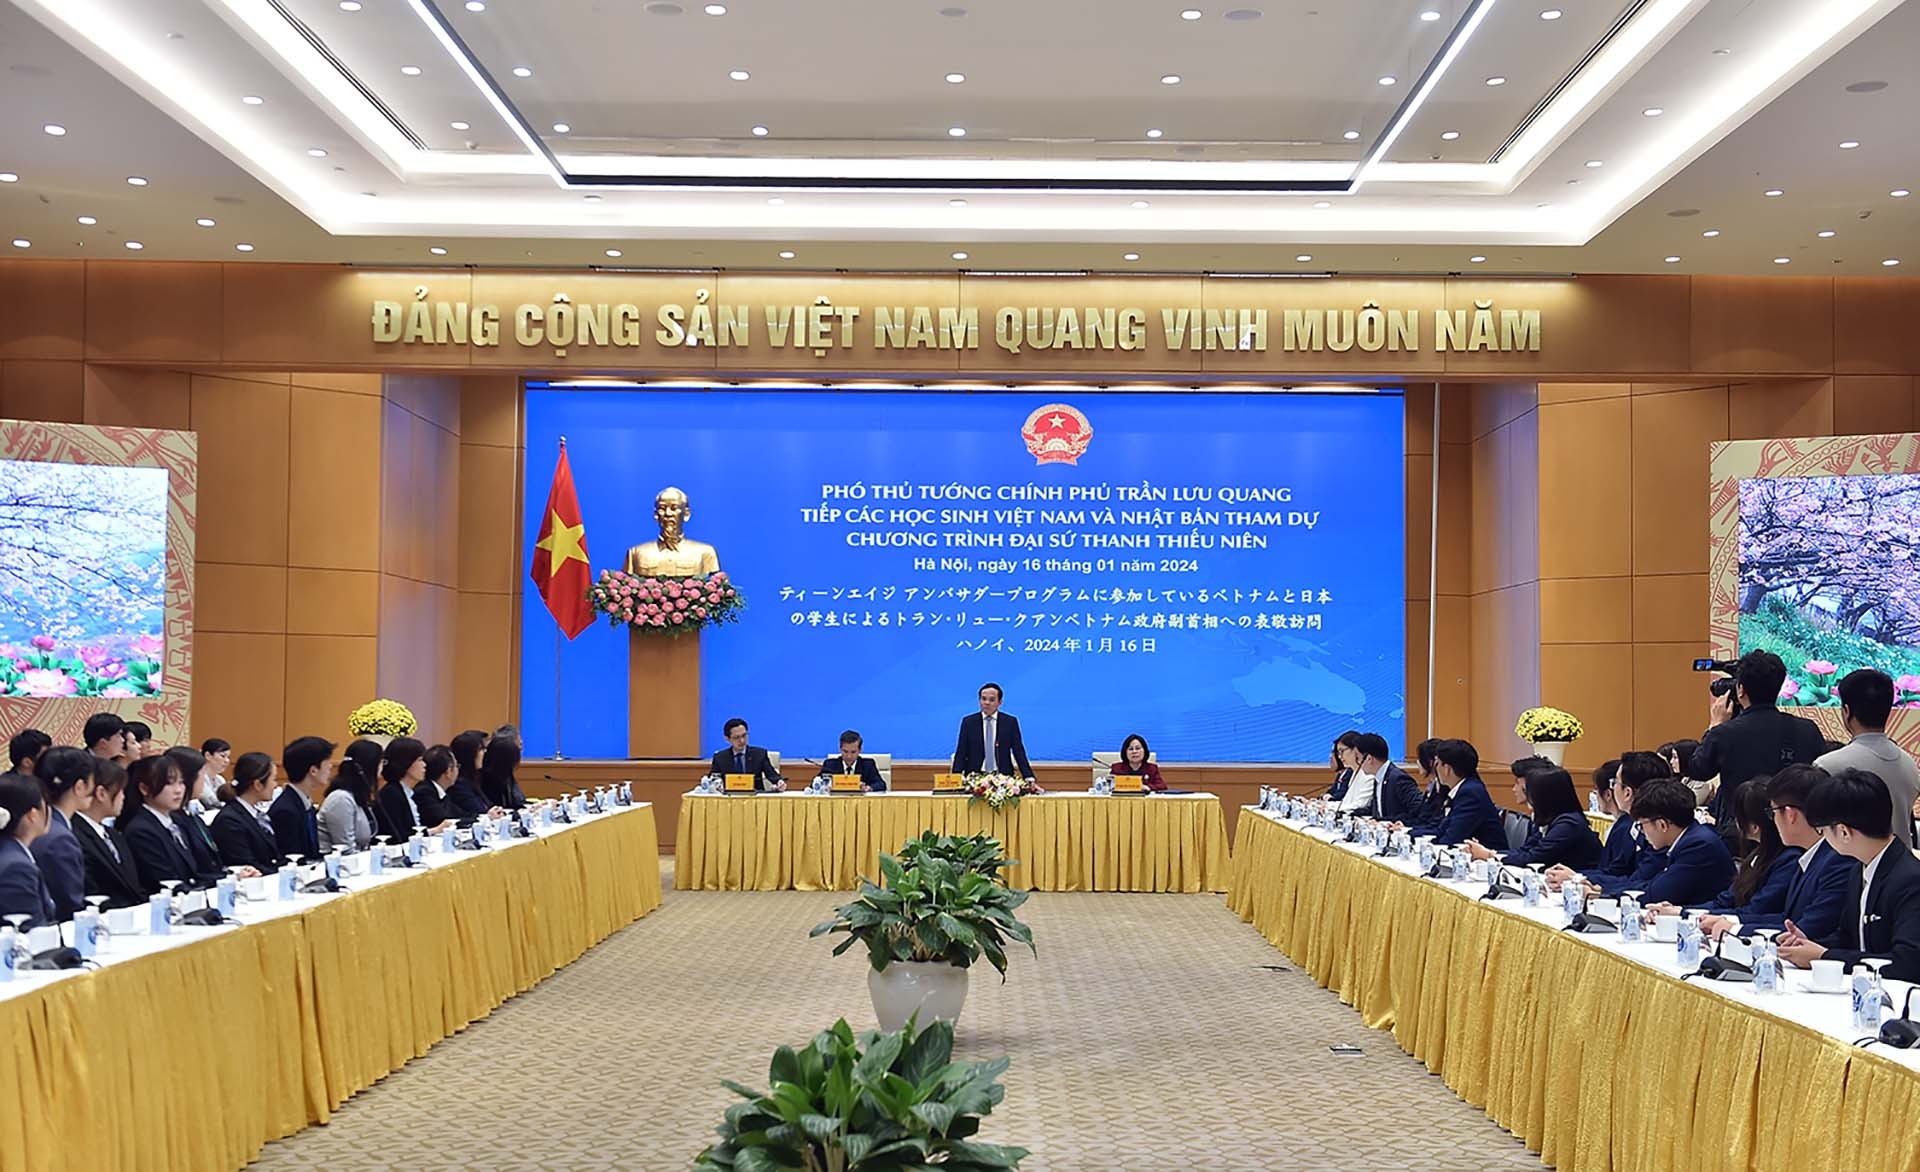 Phó Thủ tướng Trần Lưu Quang tiếp đoàn học sinh, sinh viên Việt Nam và Nhật Bản tham dự Chương trình Đại sứ Thanh thiếu niên. (Nguồn: VGP)